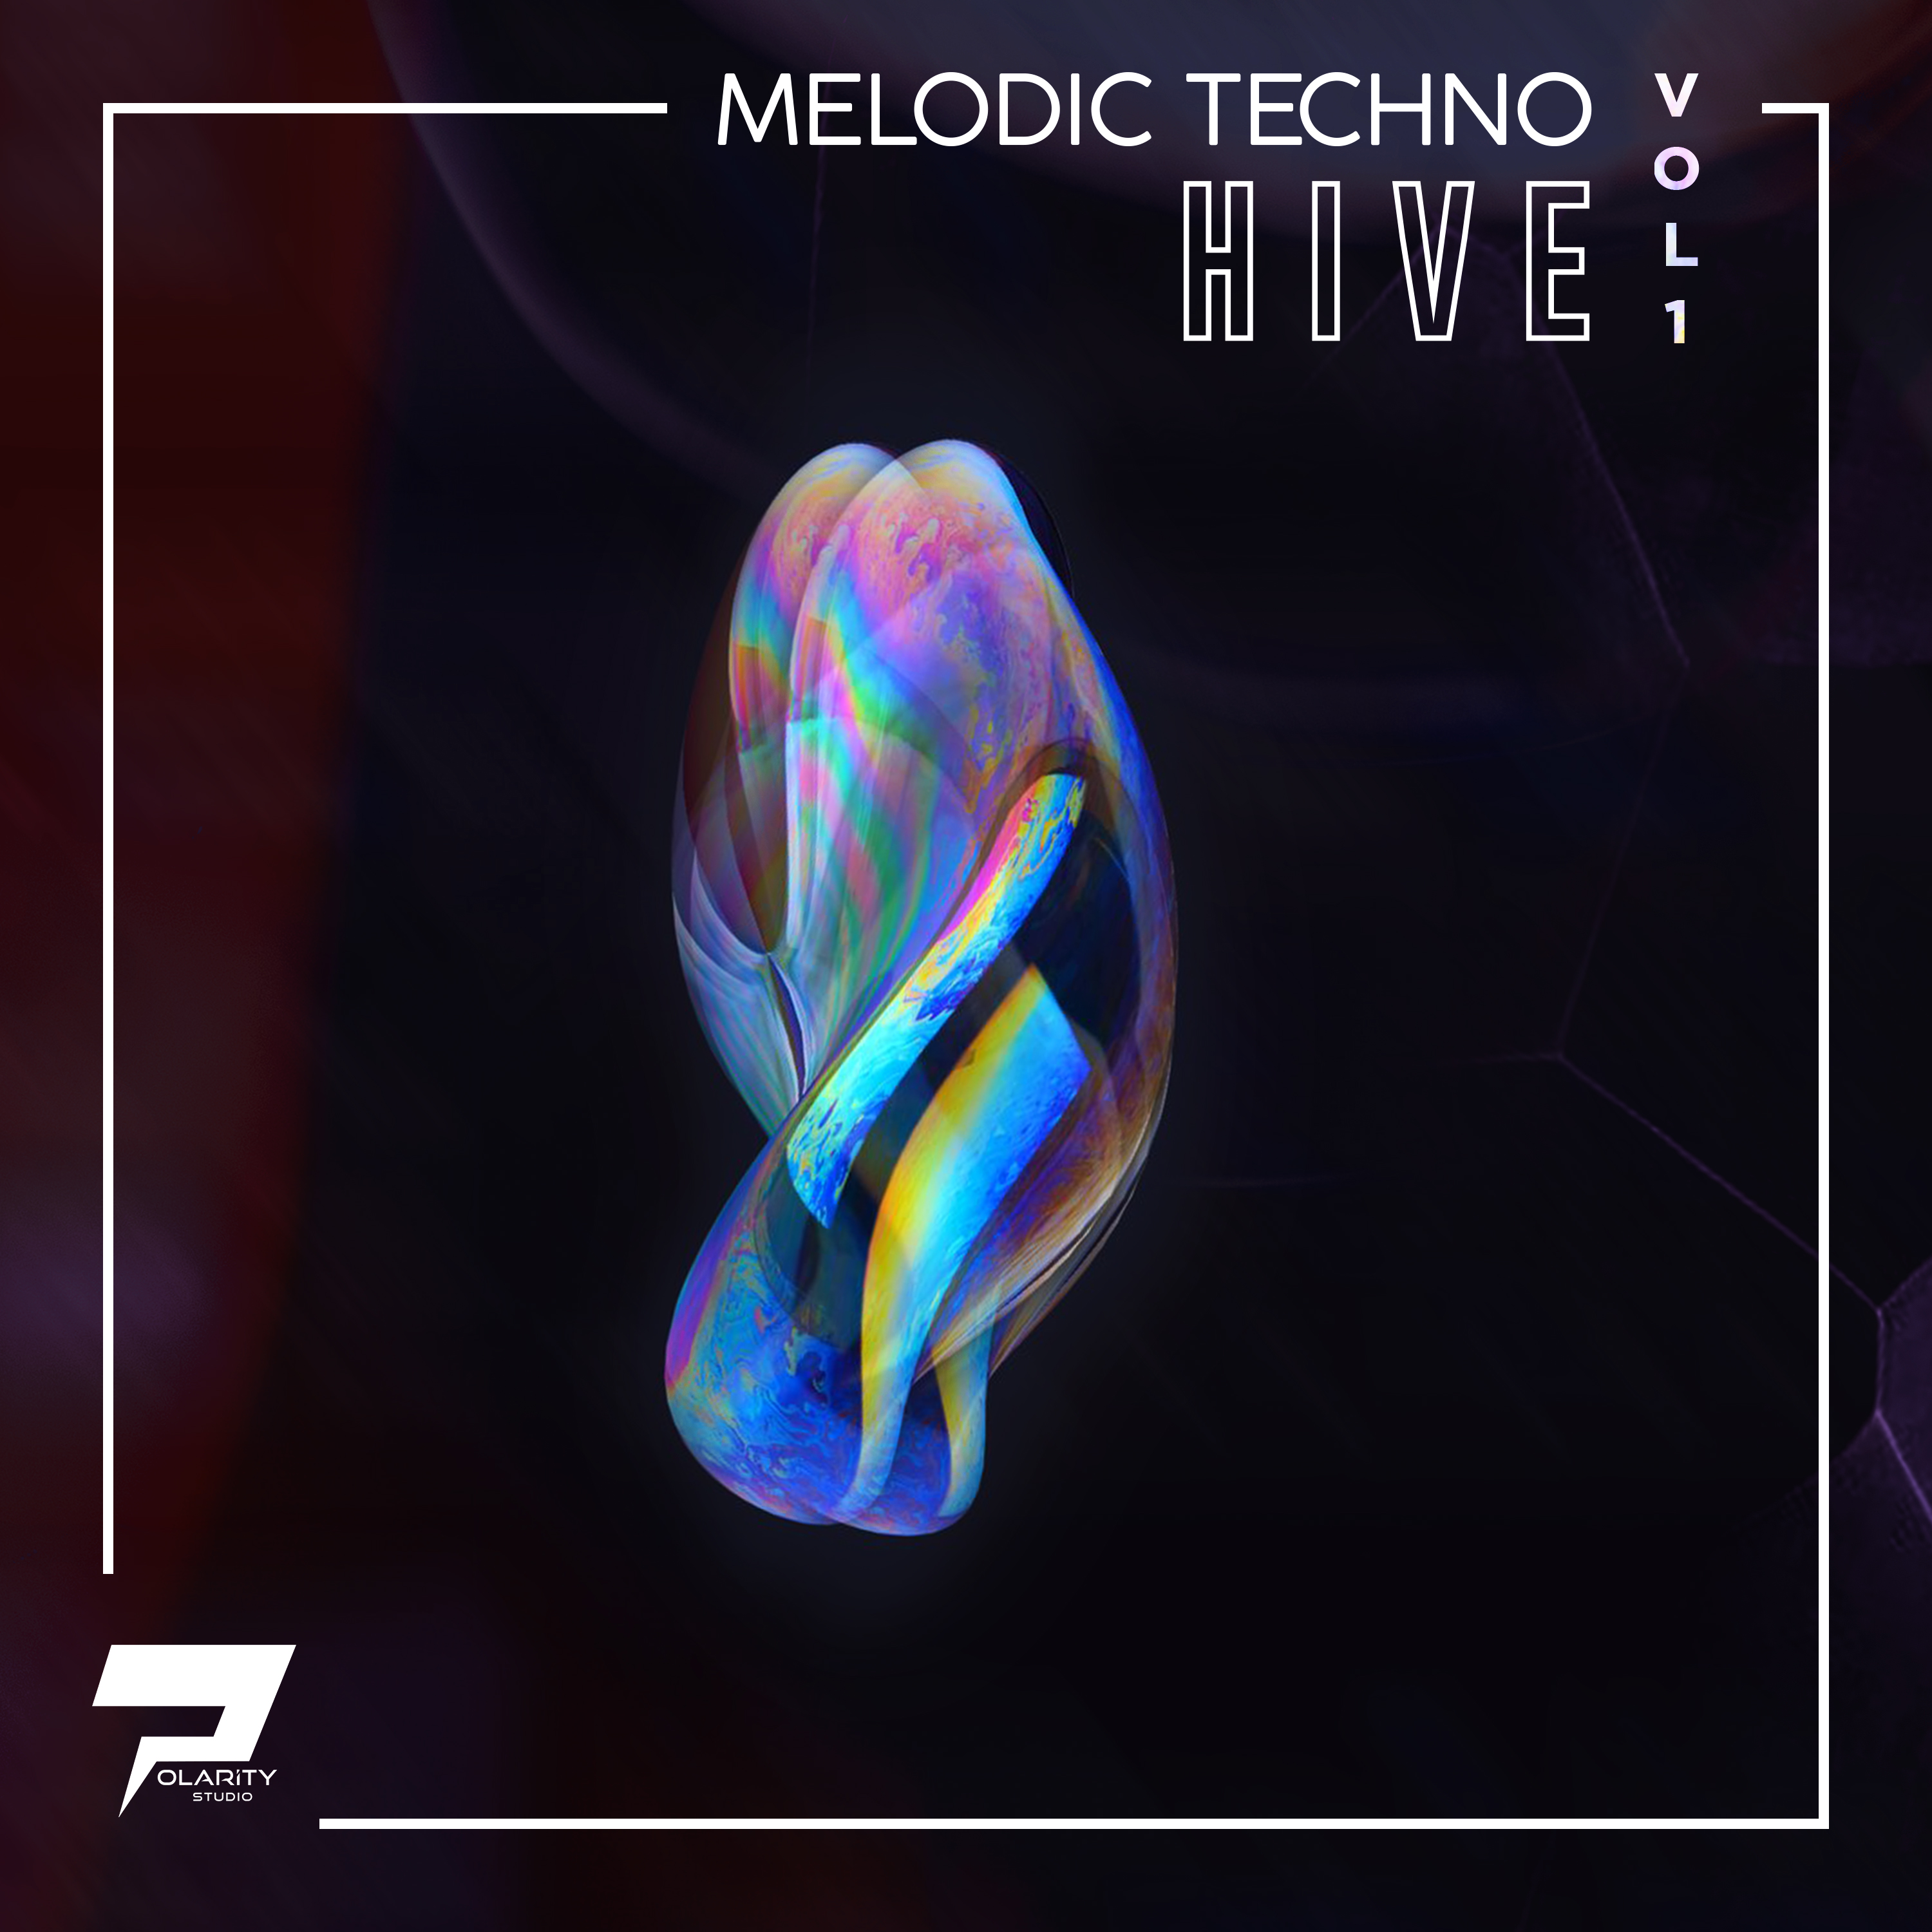 Polarity Studio - Melodic Techno - Hive 2 Vol. 1